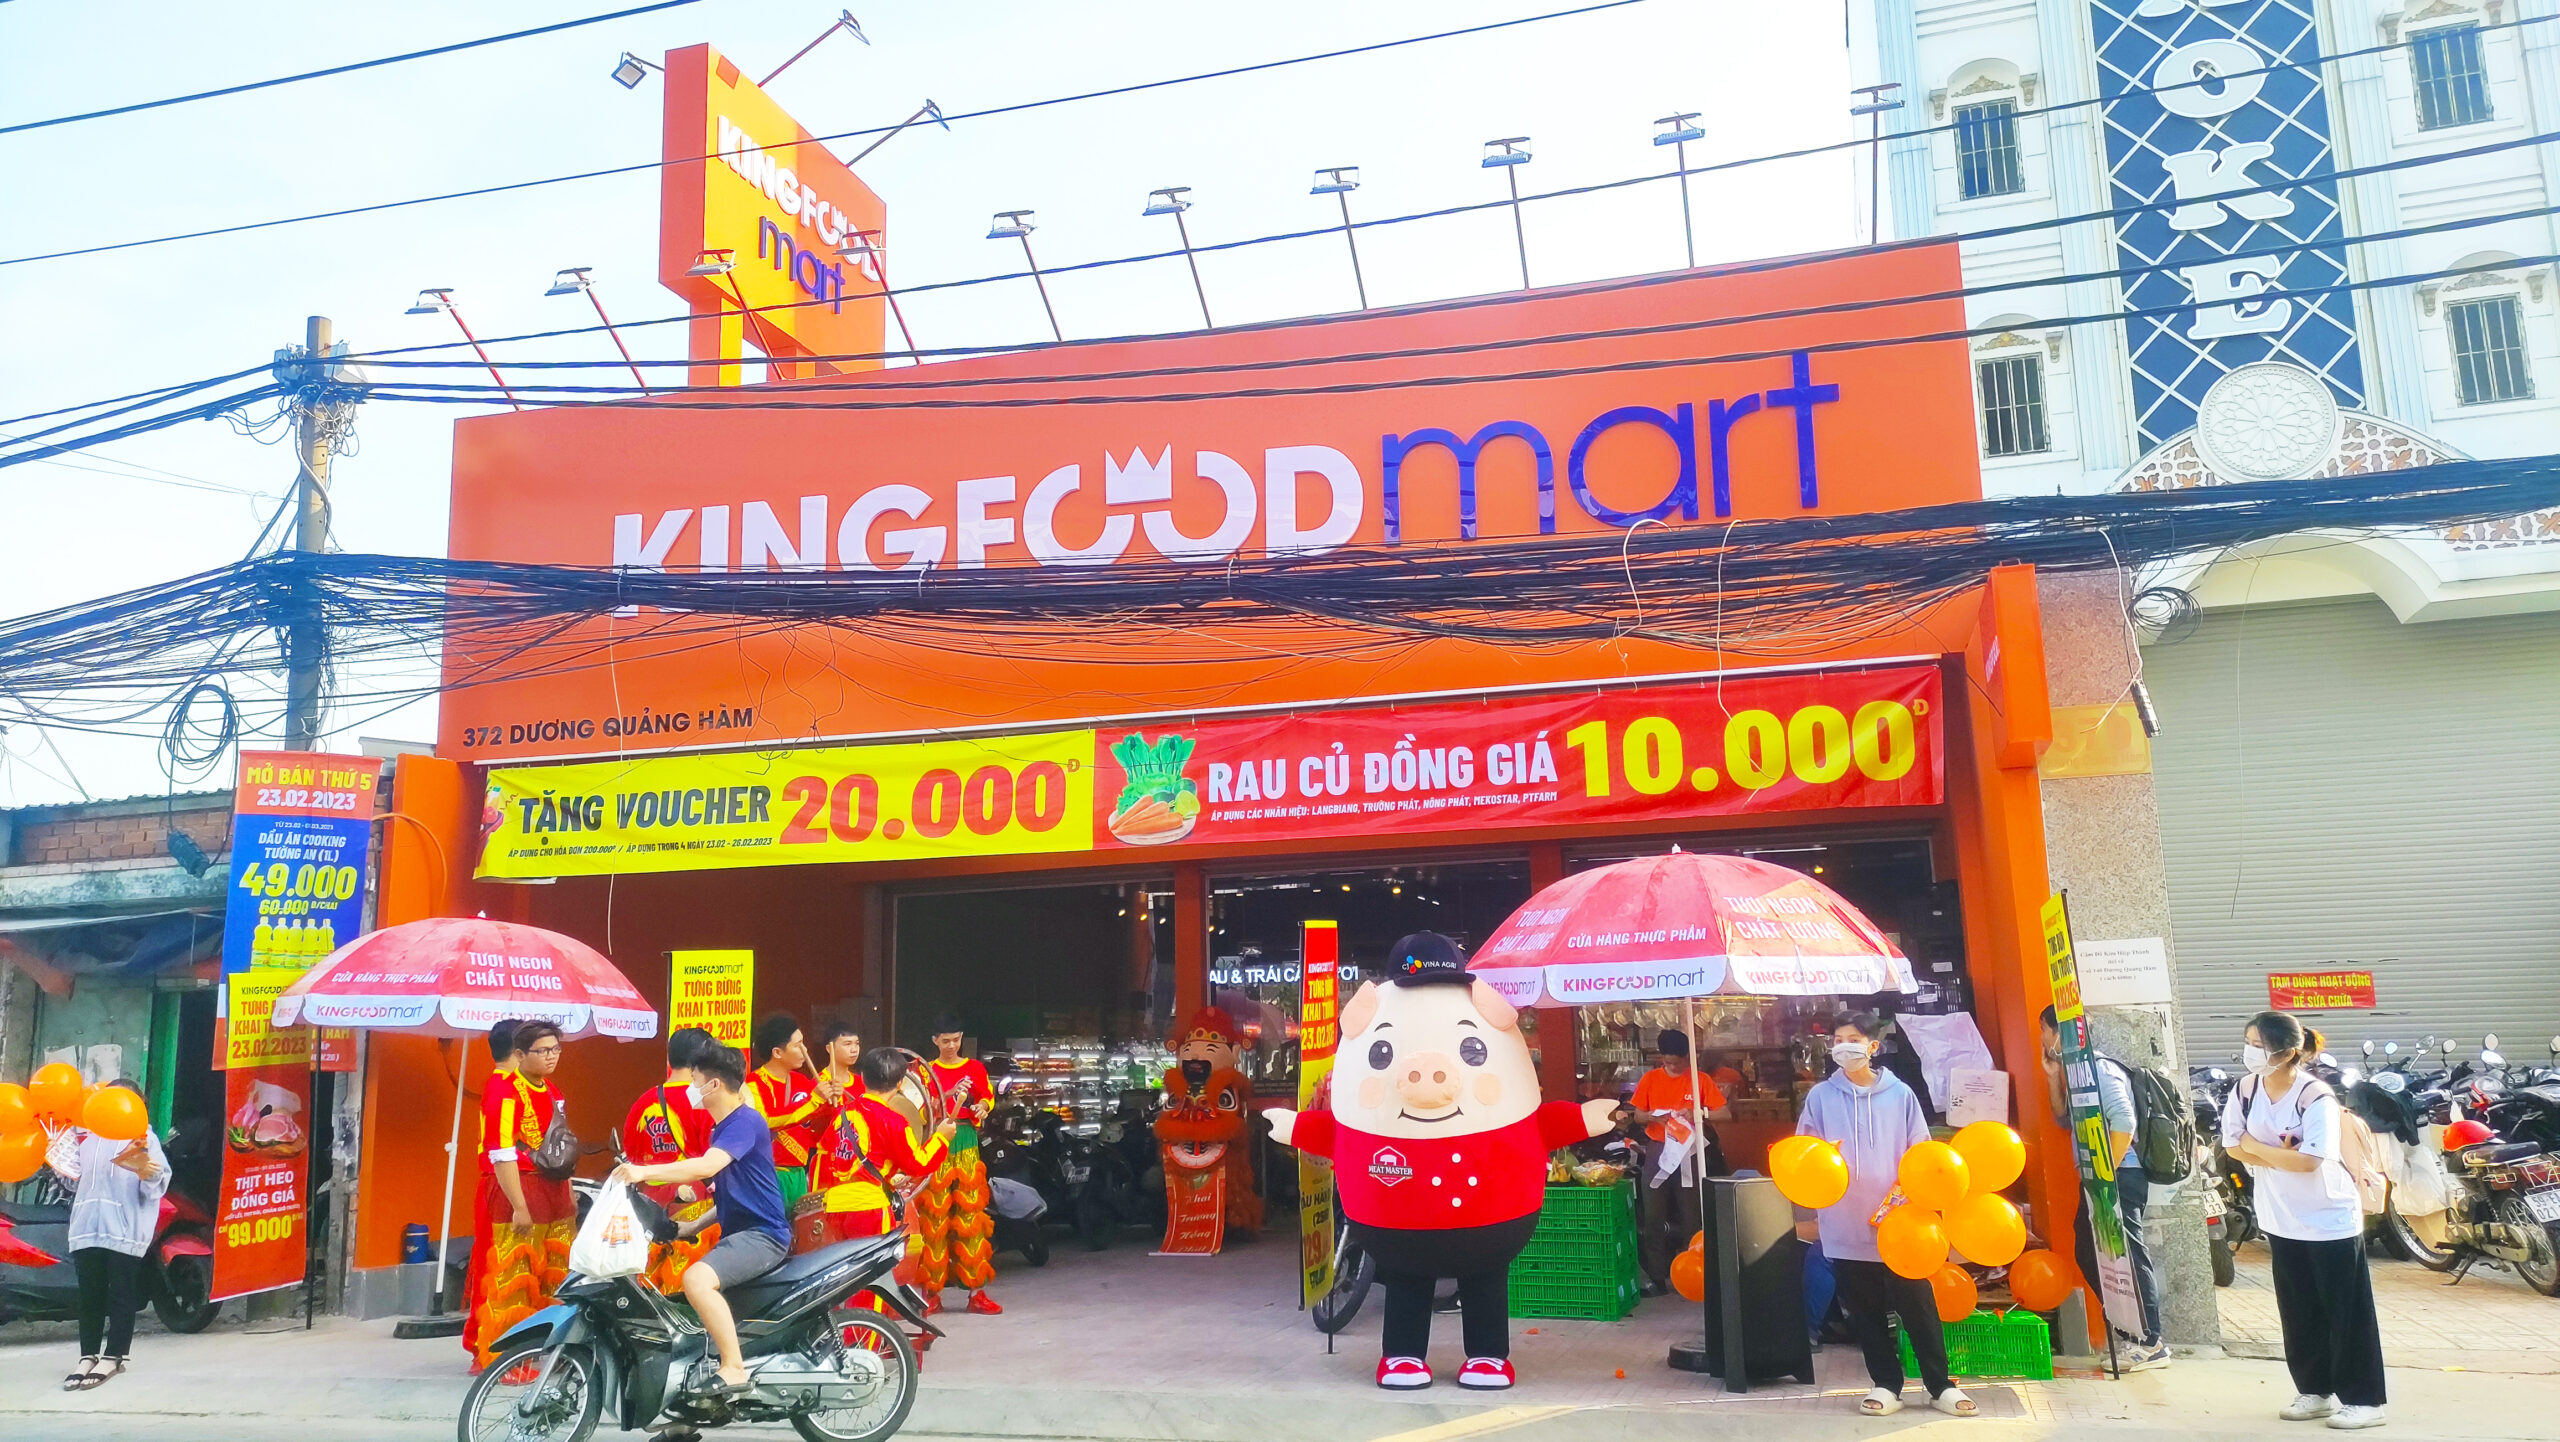 Kingfoodmart Dương Quảng Hàm, Q.Gò Vấp